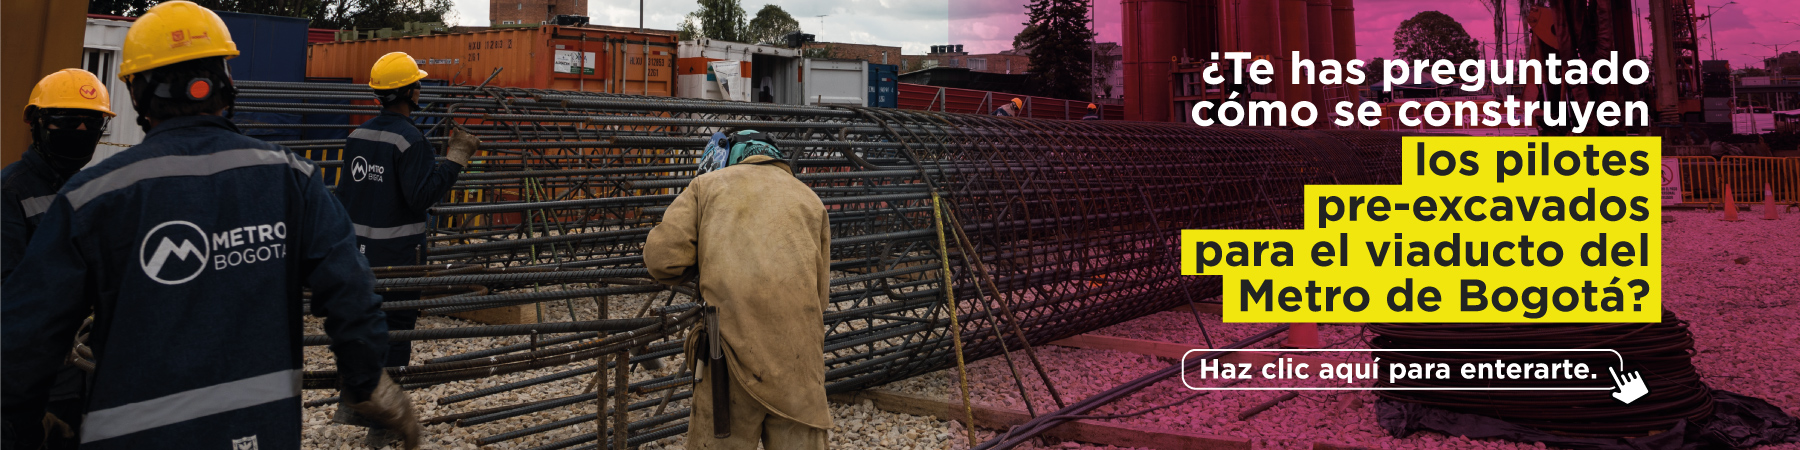 ¿Te has preguntado cómo se construyen los pilotes pre-excavados para el viaducto del Metro de Bogotá? Haz clic aquí para enterarte.